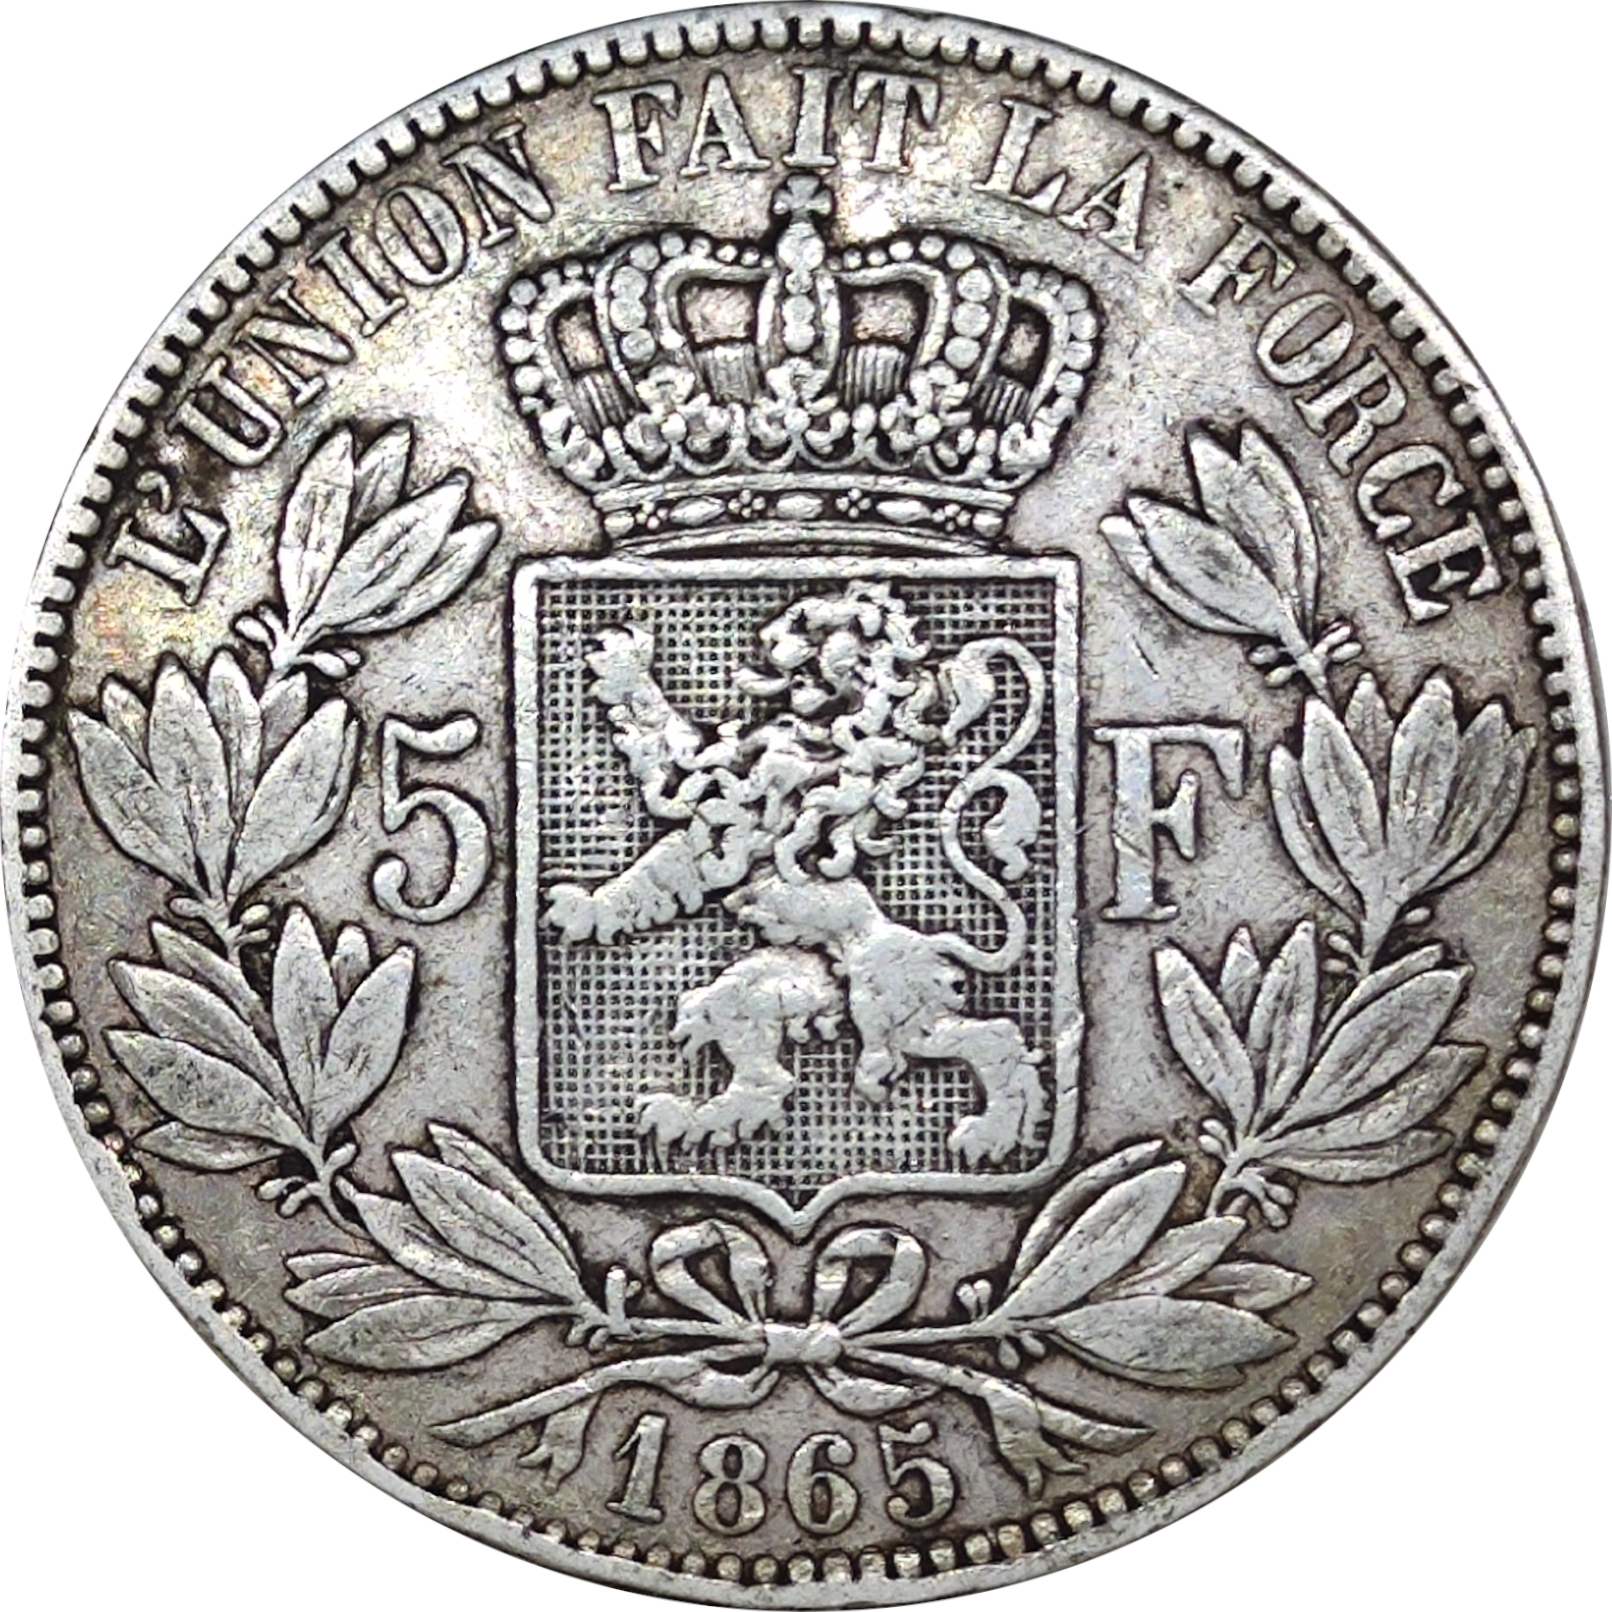 5 francs - Leopold I - Mature head